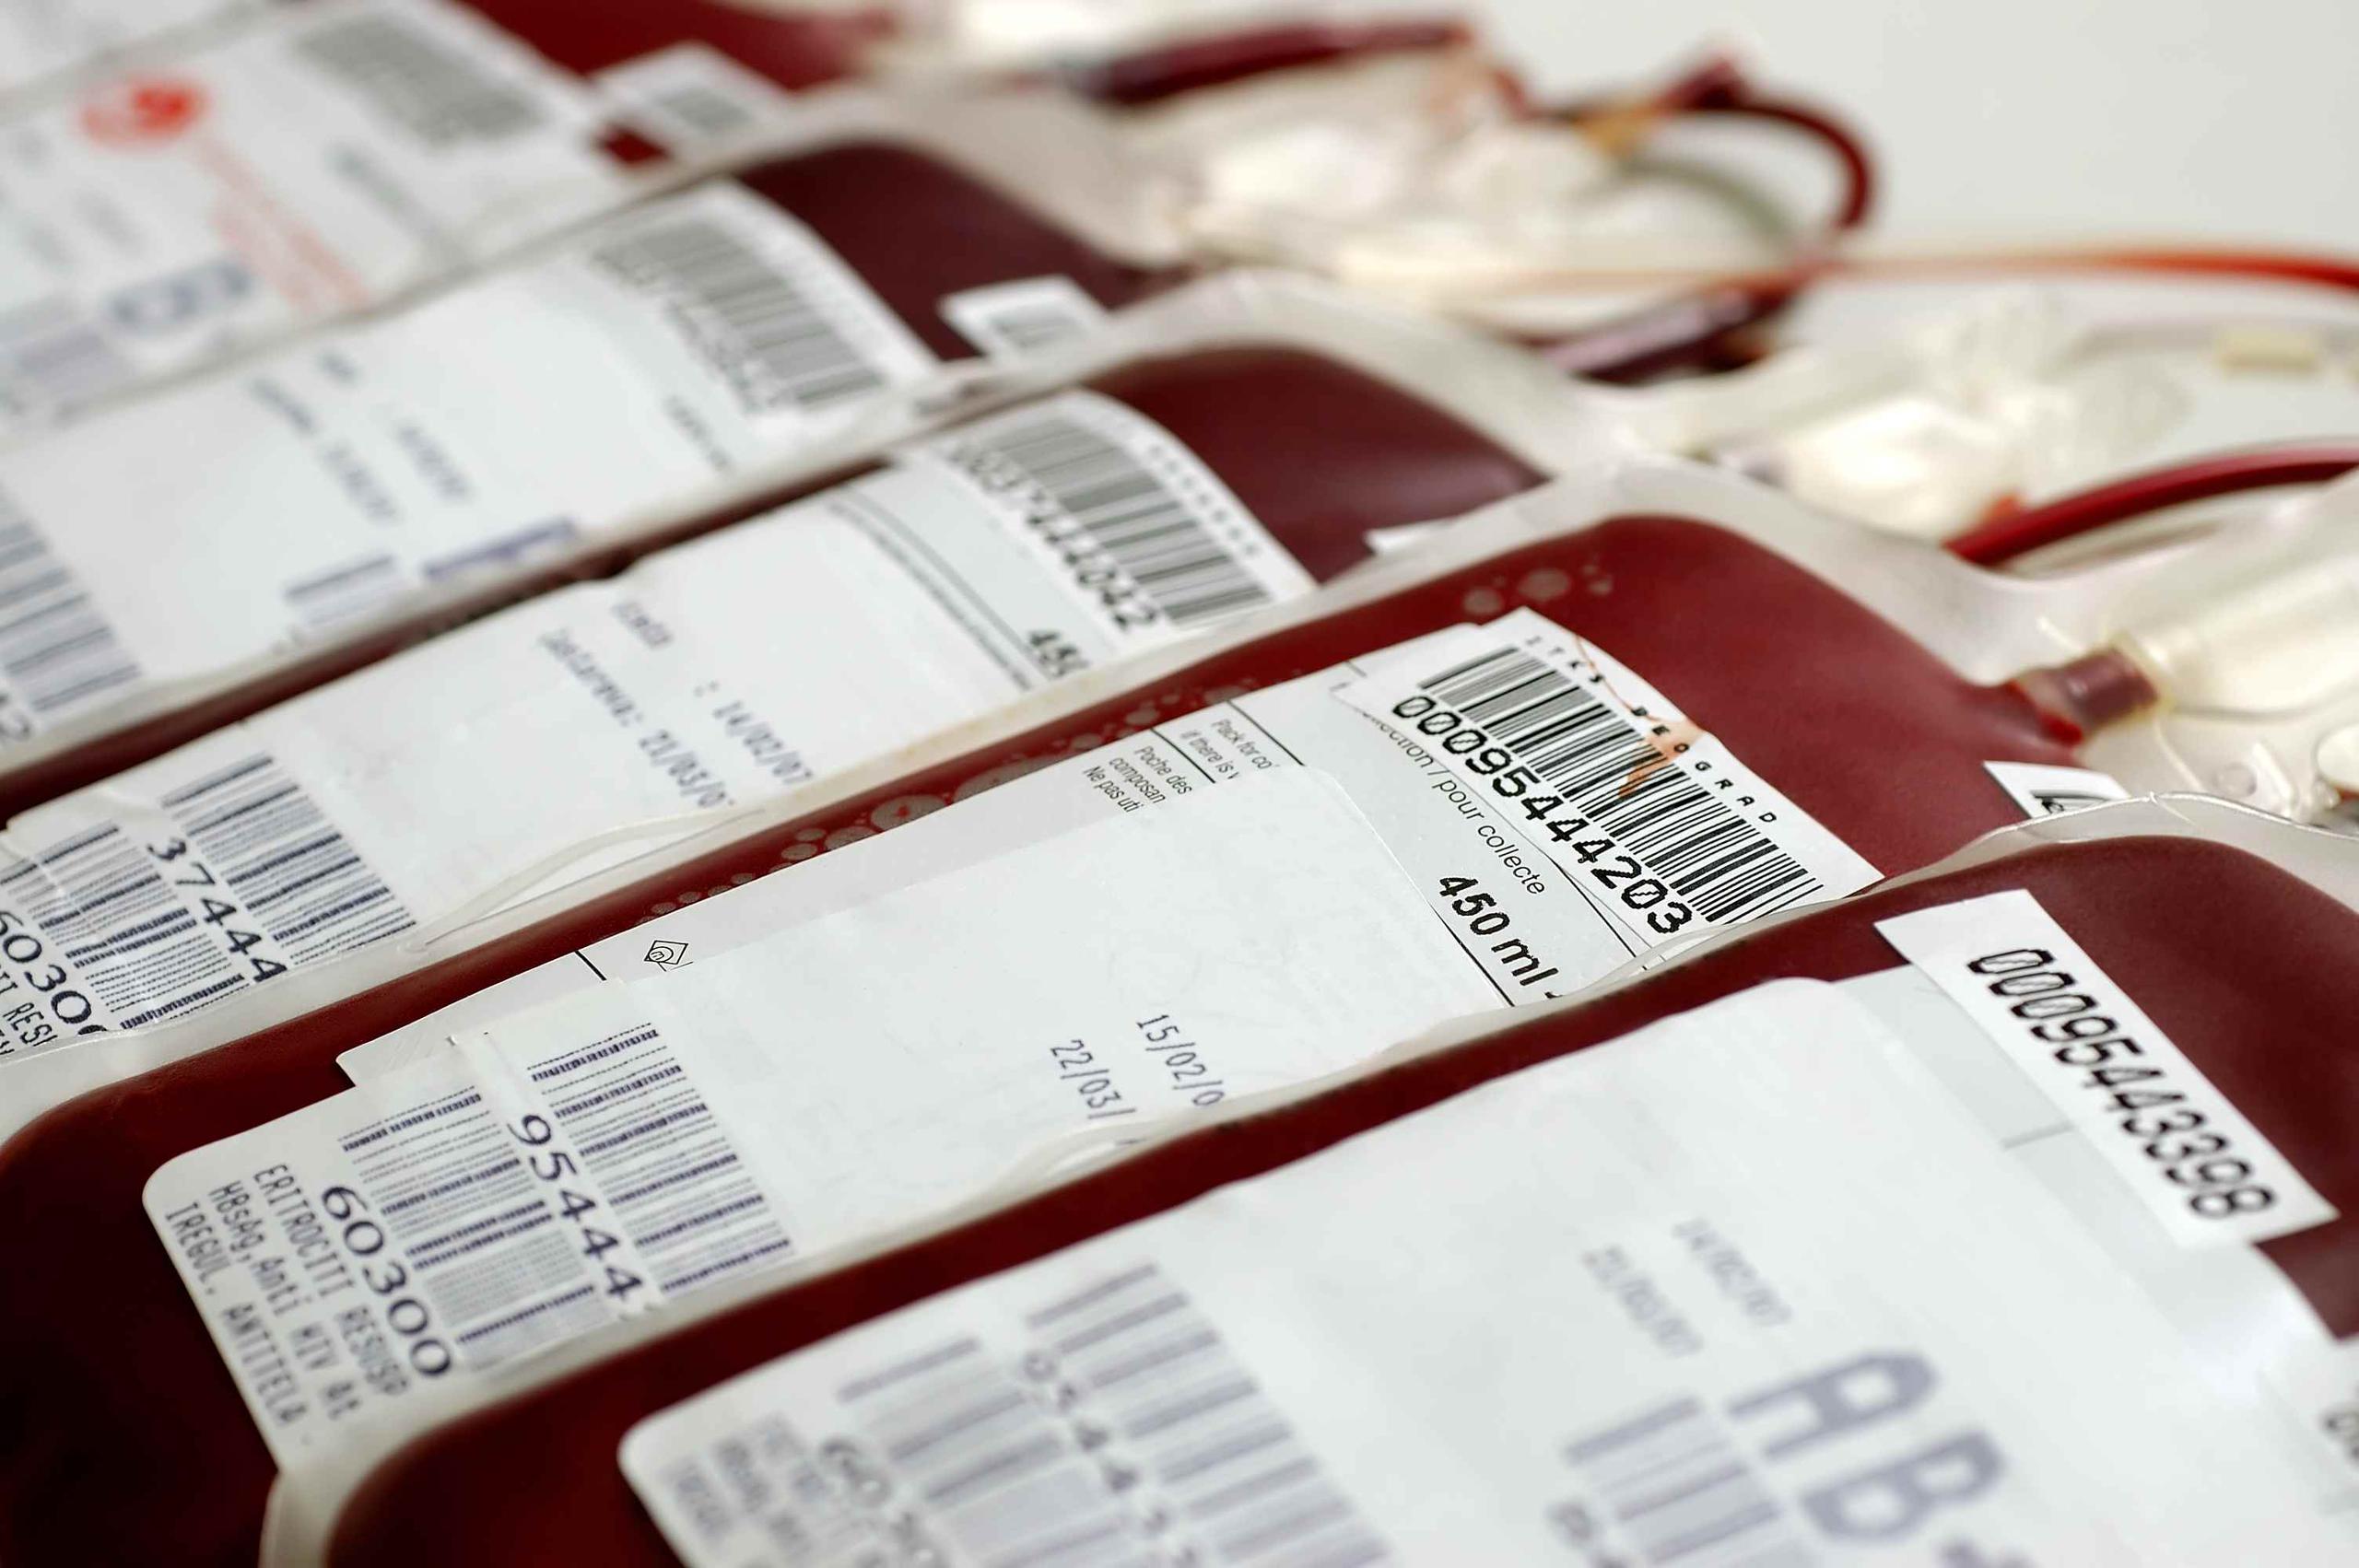 Las personas pueden donar sangre cada 56 días. (Shutterstock.com)